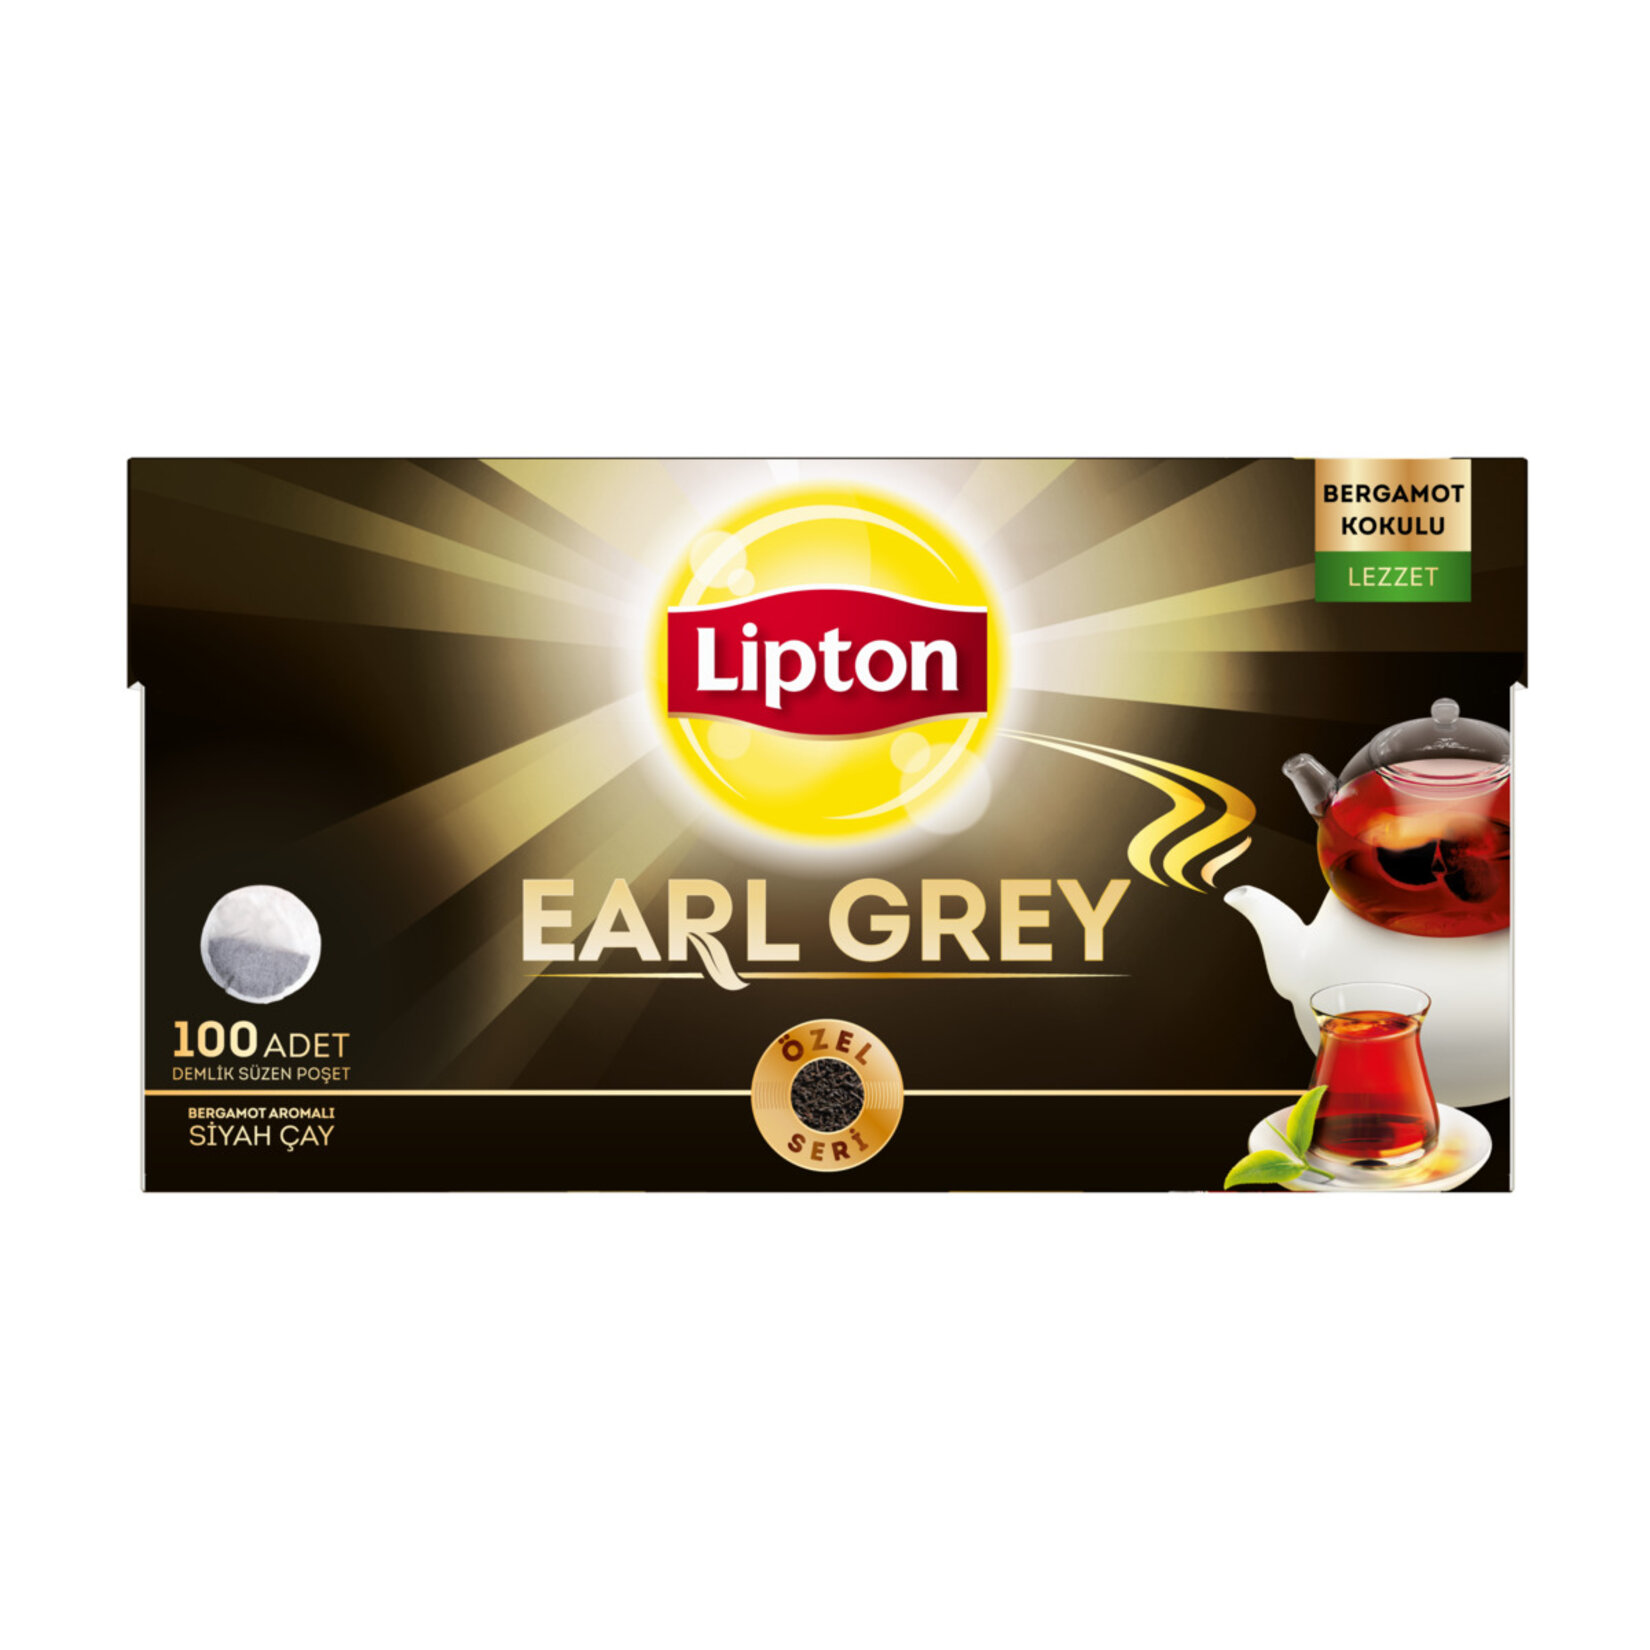 Lipton Demlik Poşet Çay Earl Grey 100'Lü